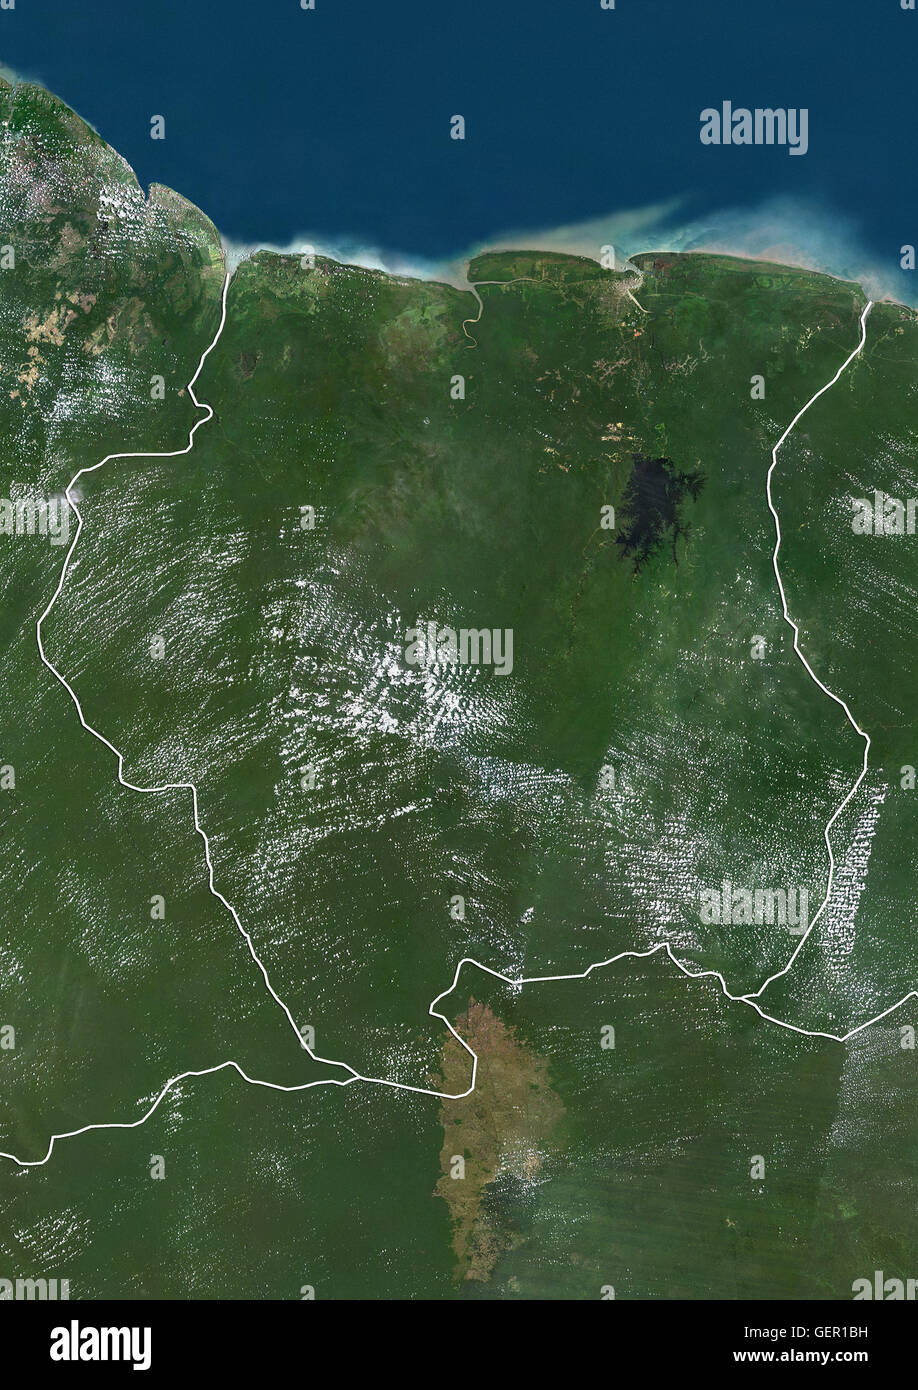 Satellitenansicht von Suriname (mit Ländergrenzen). Dieses Bild wurde aus Daten von Landsat-Satelliten erworben erstellt. Stockfoto